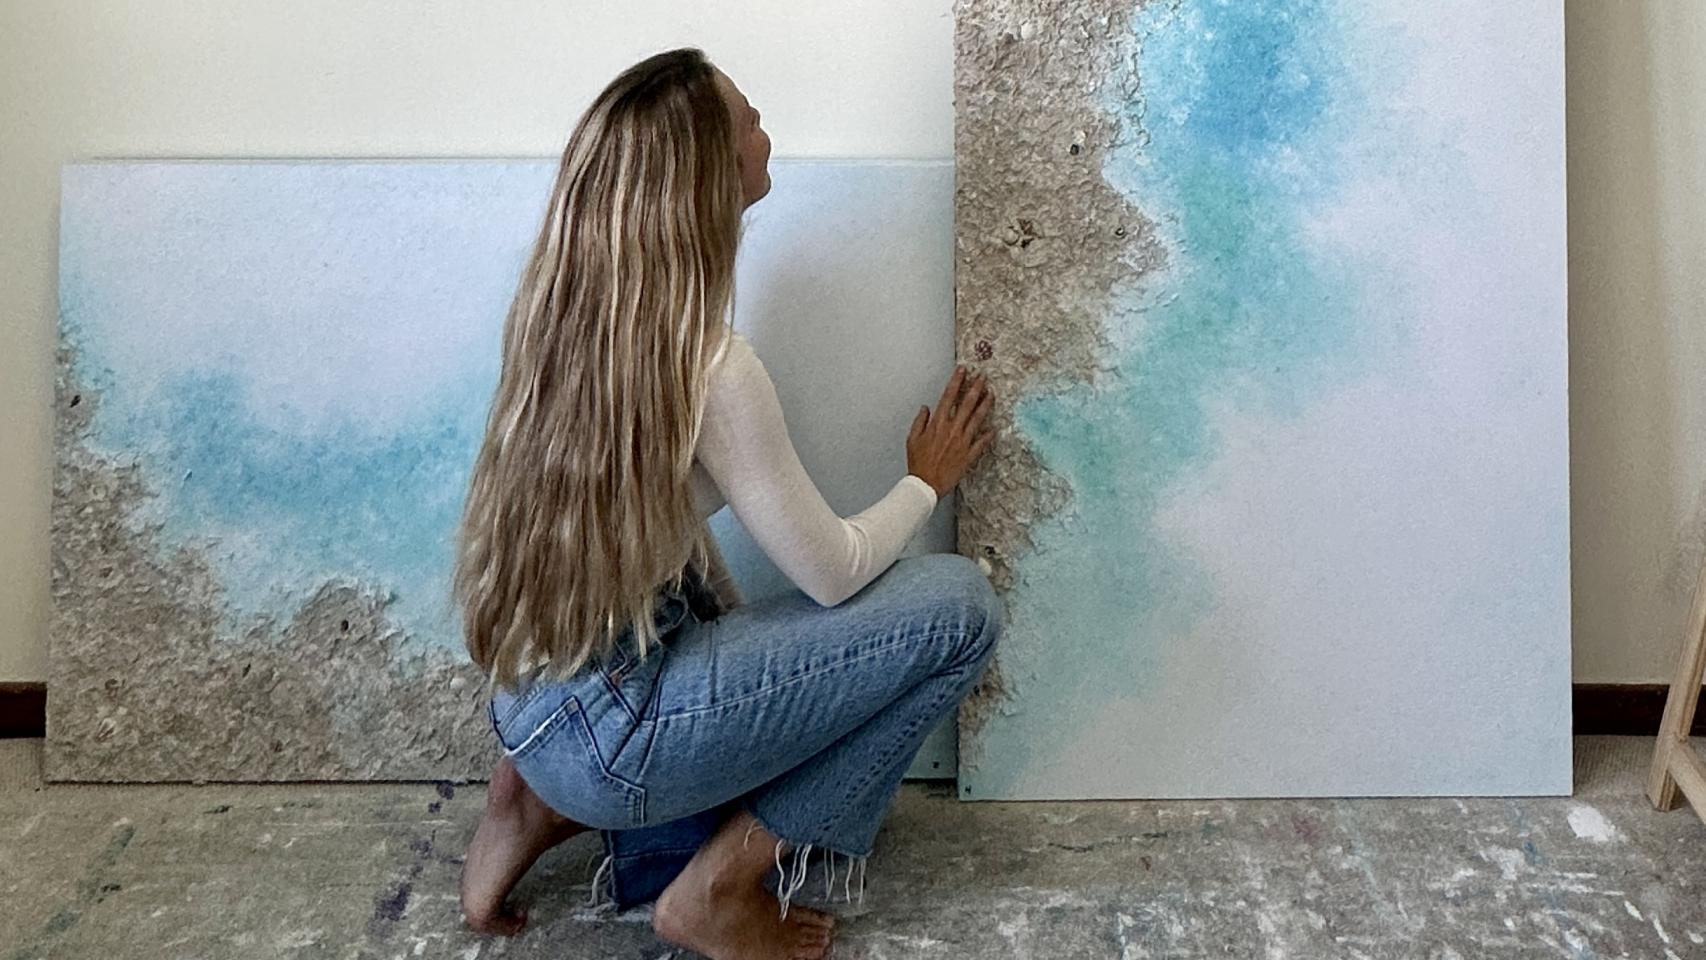 La pintora delante de sus producciones de arte.